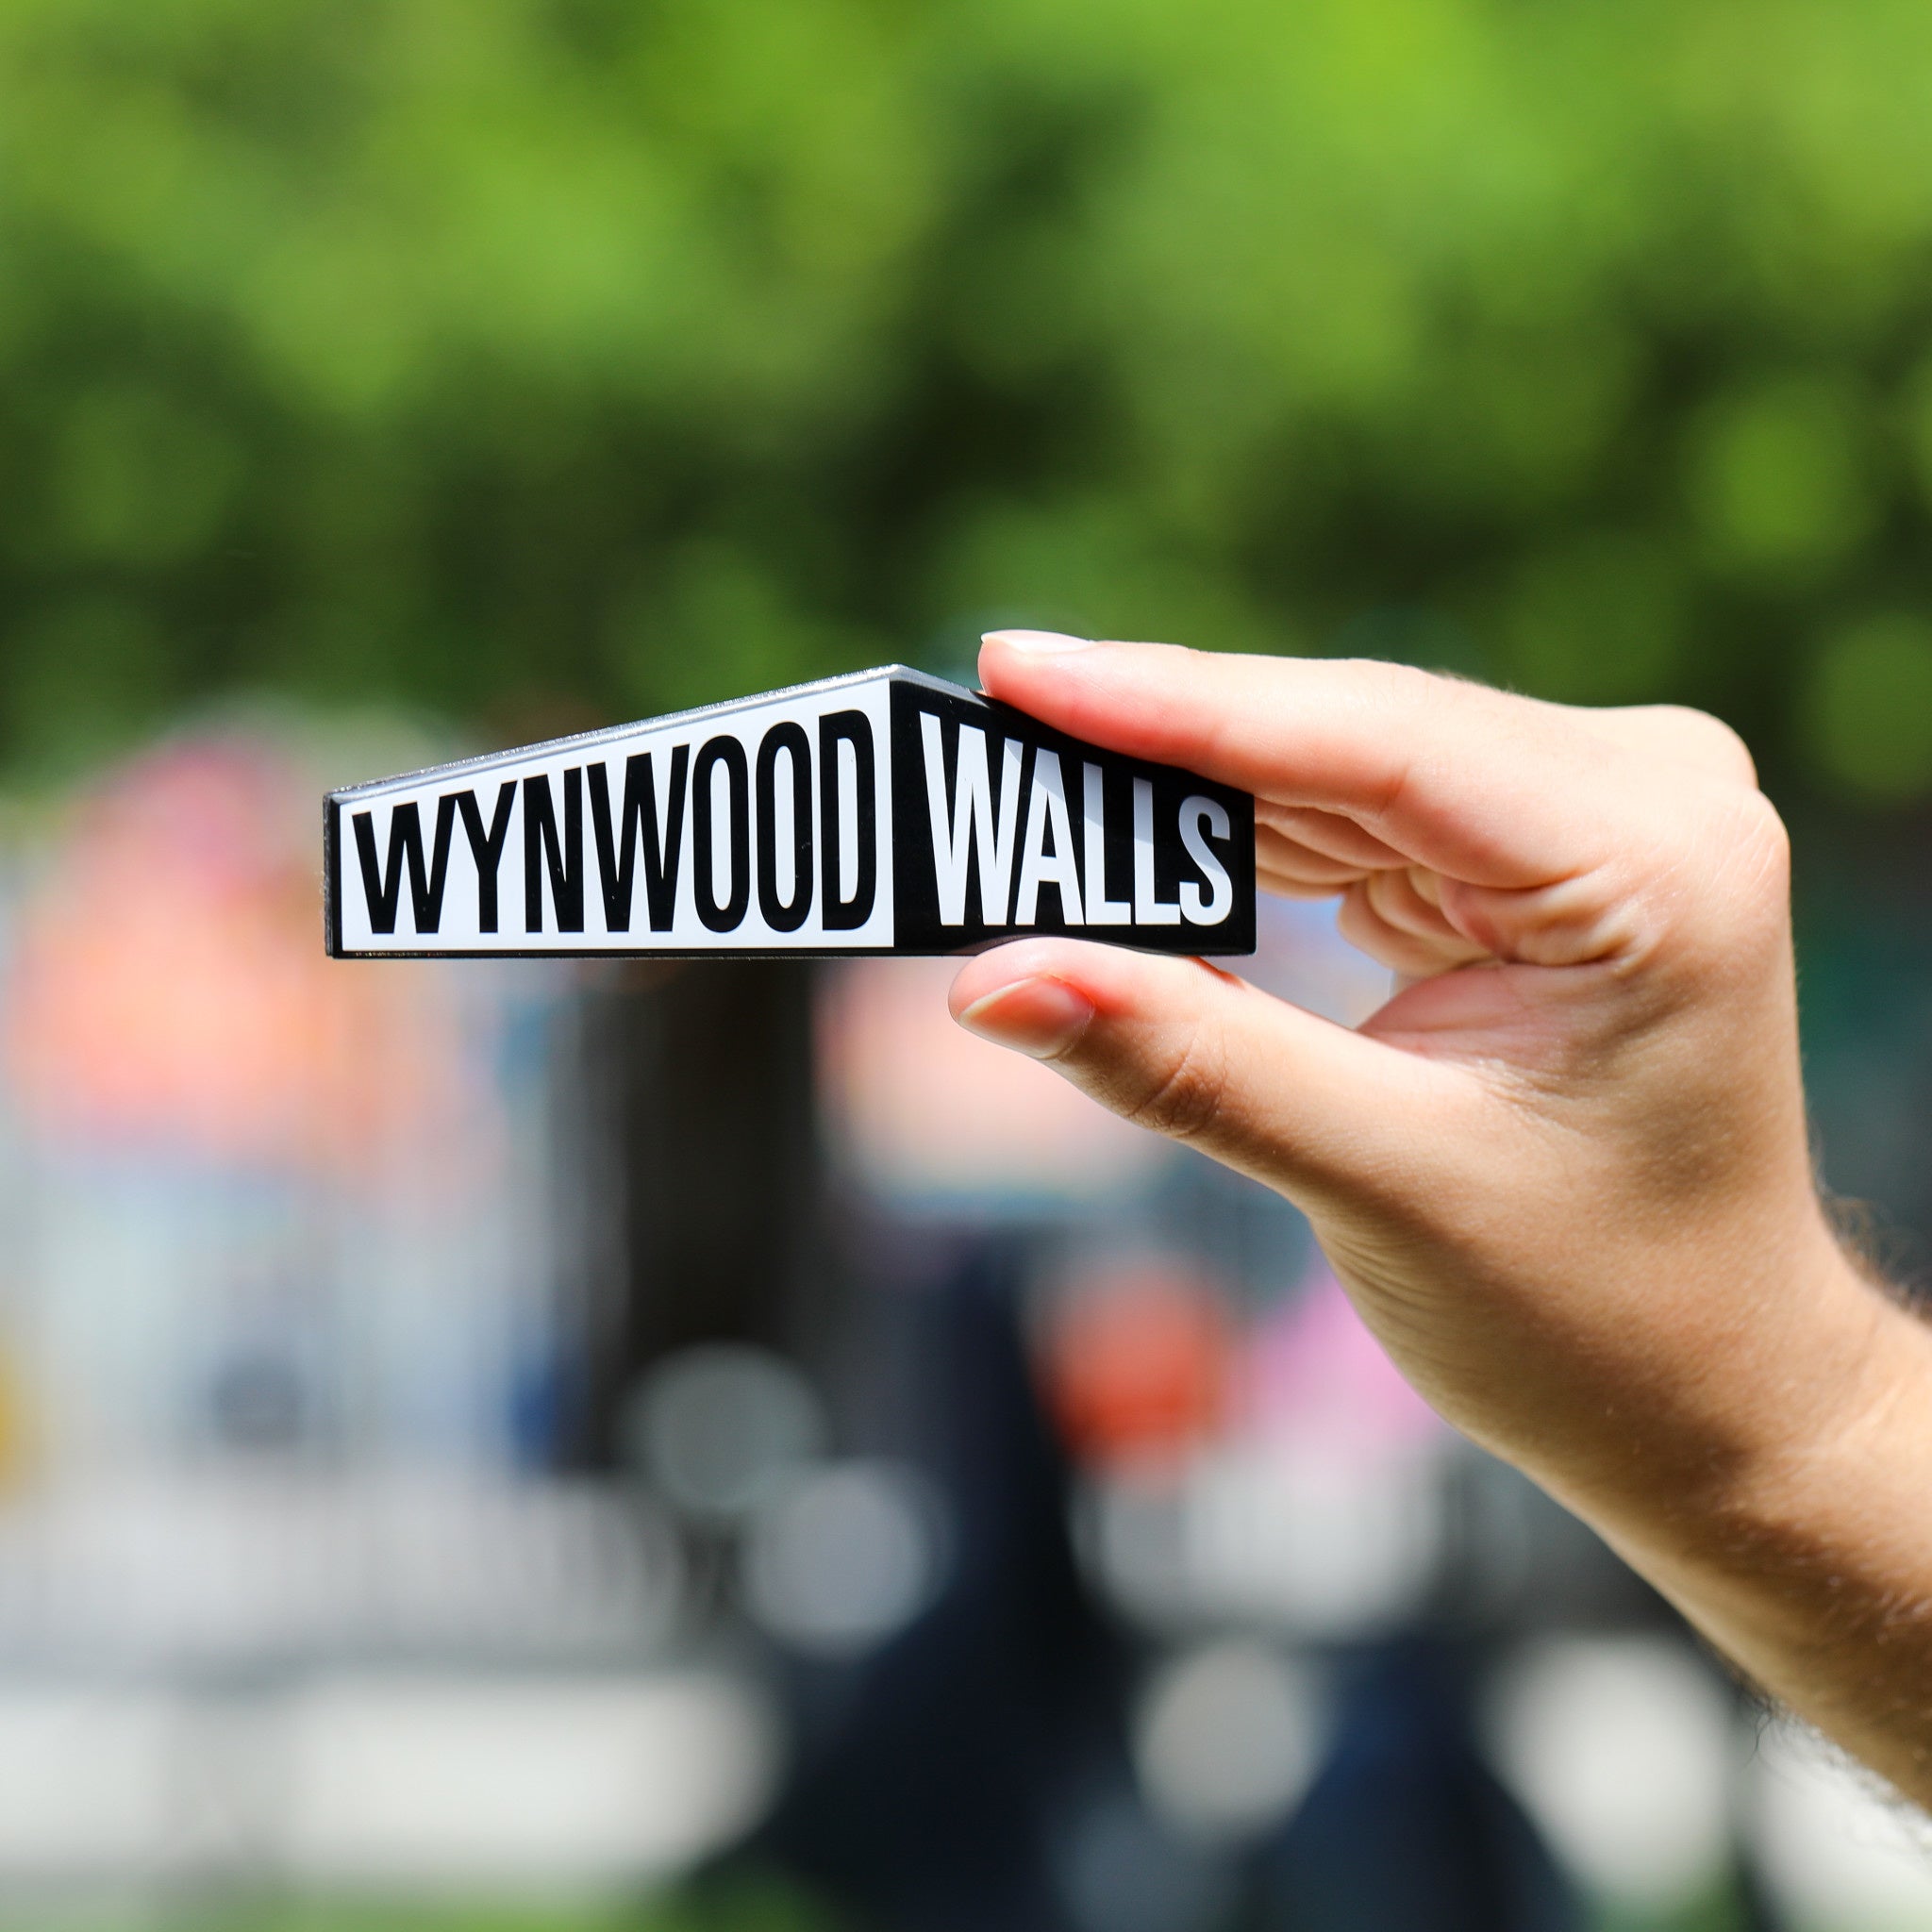 Wynwood Walls Enamel Magnet - Wynwood Walls Shop